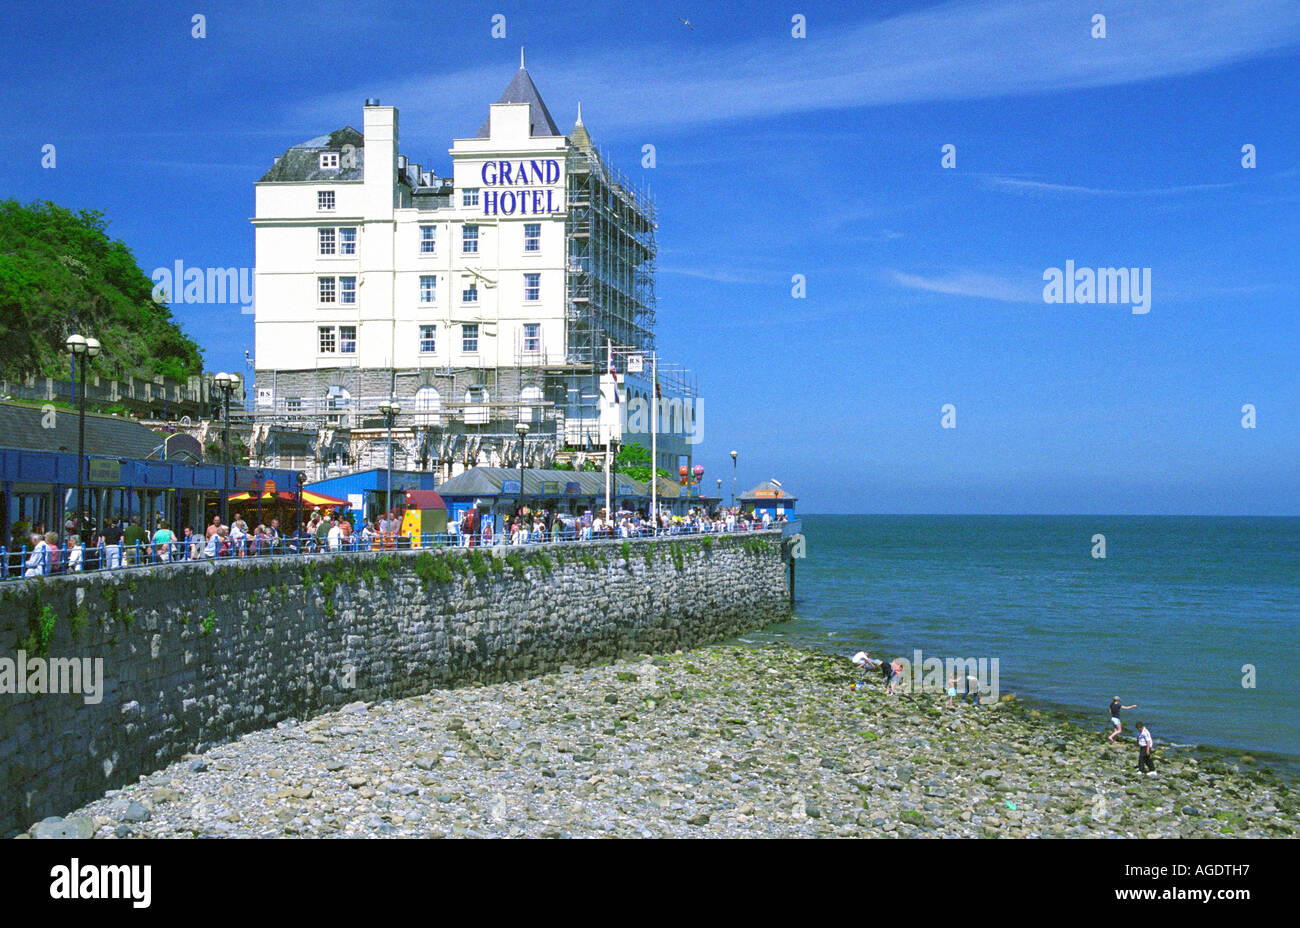 Grand Hotel, de la playa y del muelle, Llandudno, Caernarfonshire, al norte de Gales Foto de stock